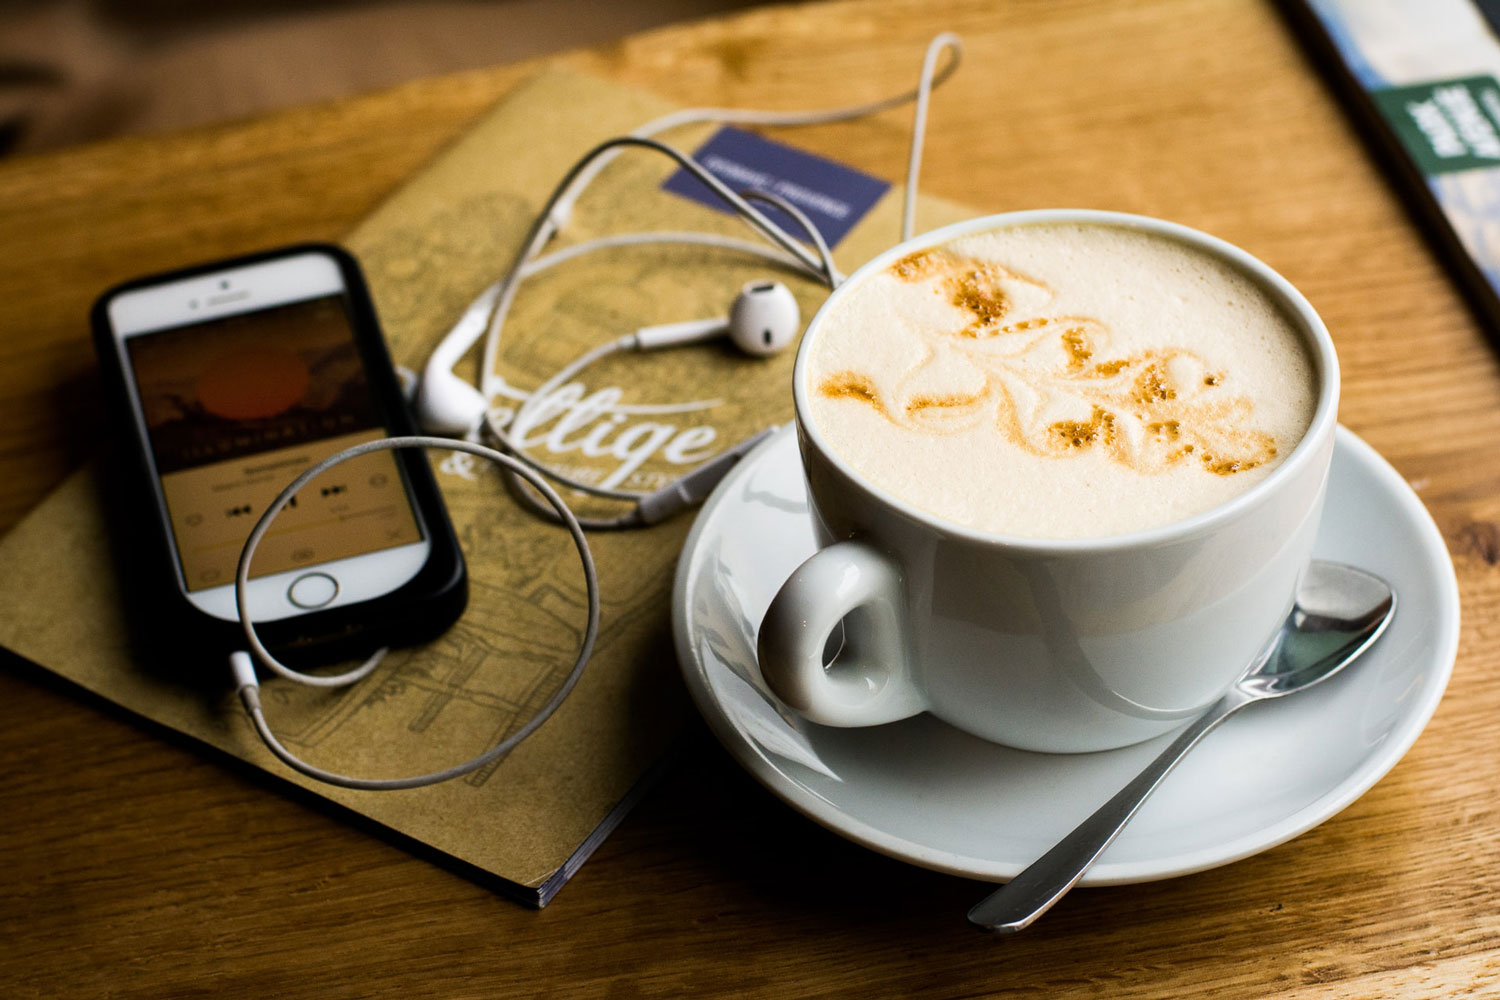 Audiobook, iPhone, coffee